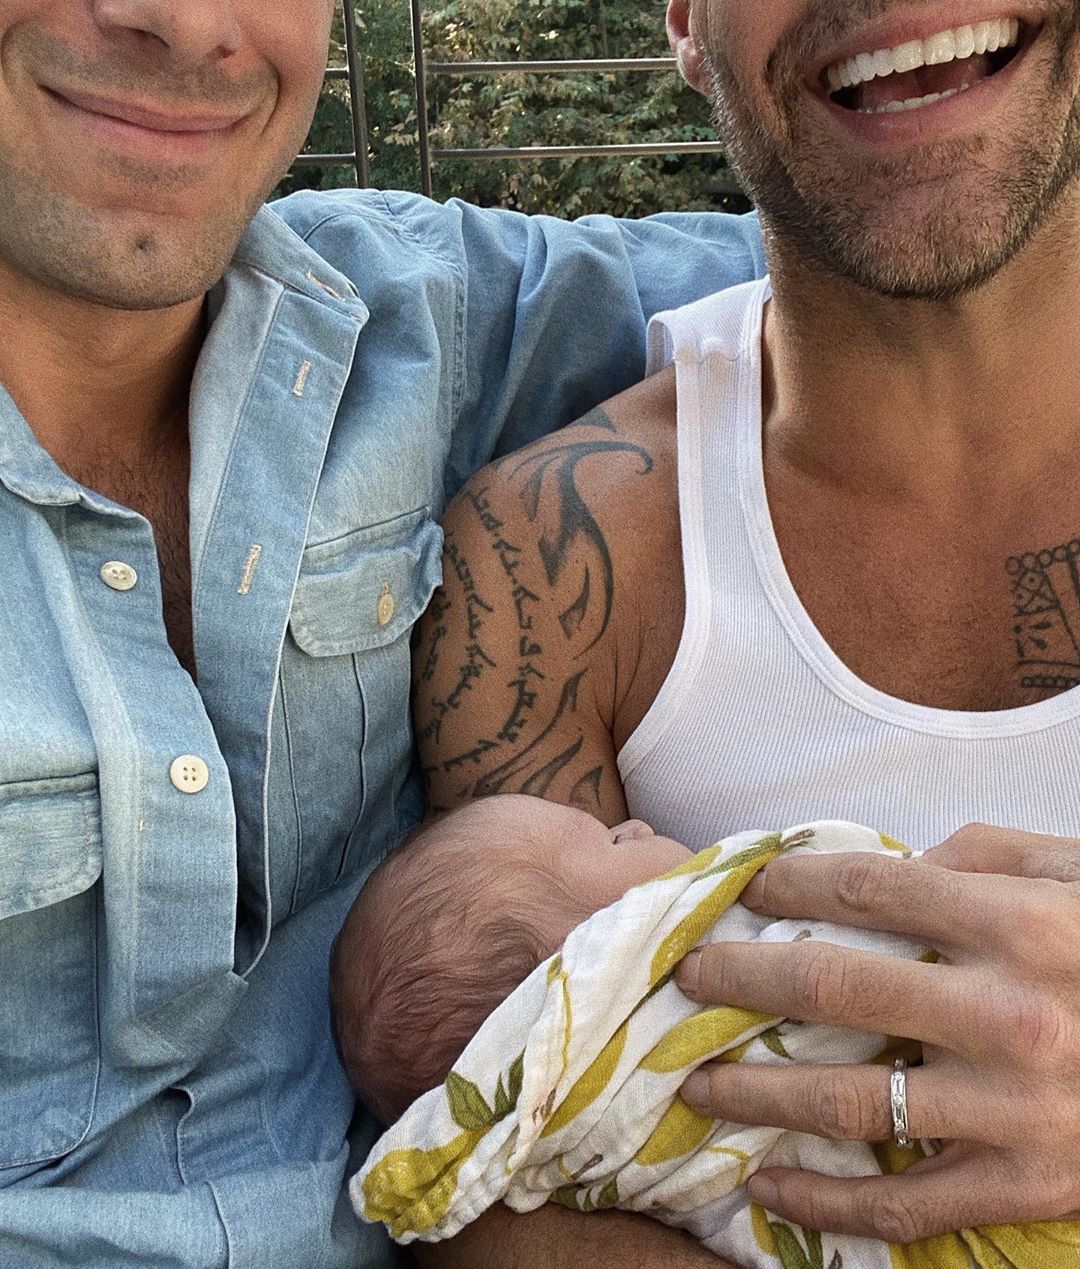 O Ricky Martin και ο σύζυγός τους μόλις ανακοίνωσαν ότι απέκτησαν τέταρτο παιδί! [pics]